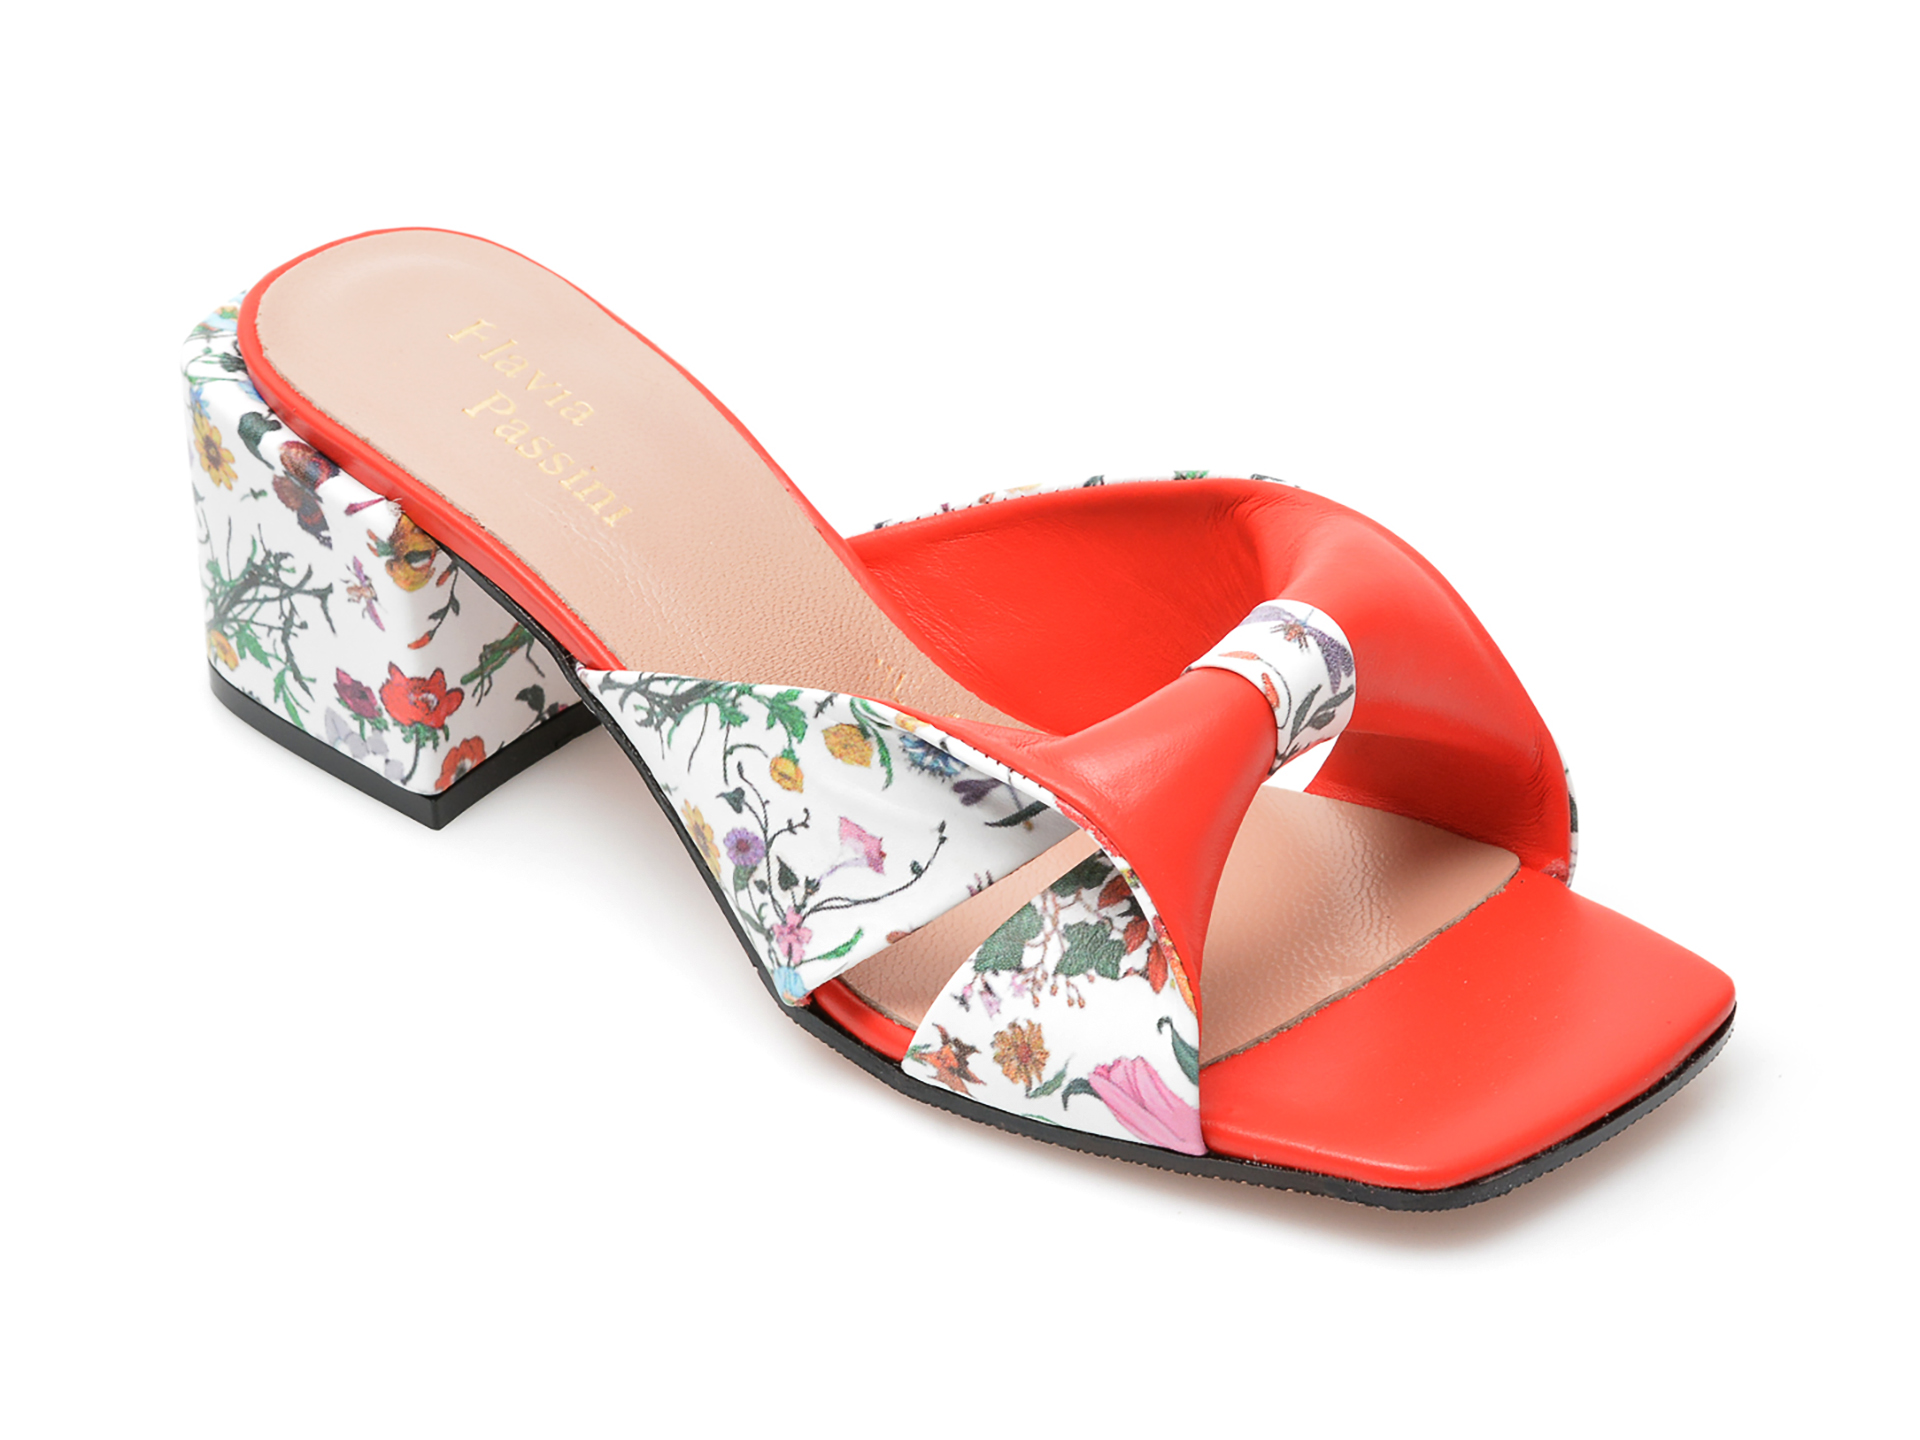 Papuci FLAVIA PASSINI rosii, 1102, din piele naturala